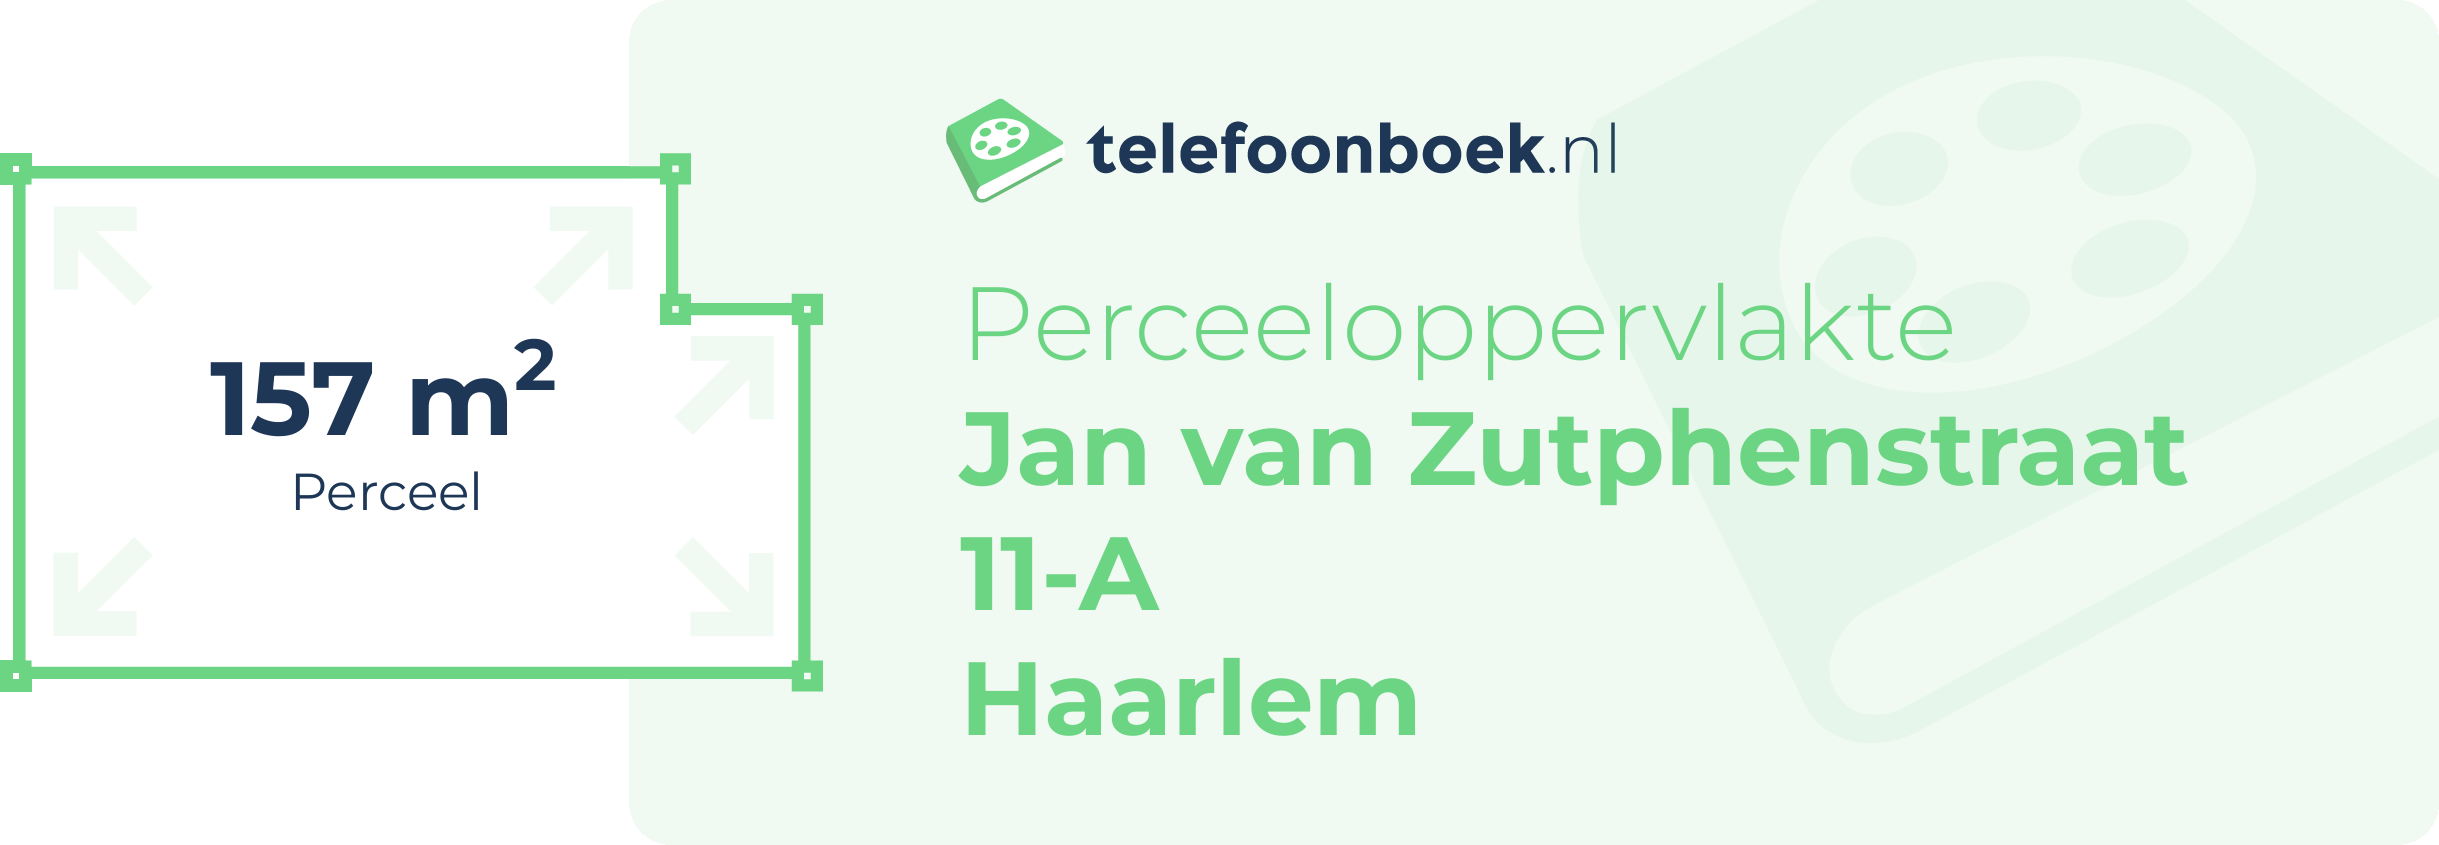 Perceeloppervlakte Jan Van Zutphenstraat 11-A Haarlem